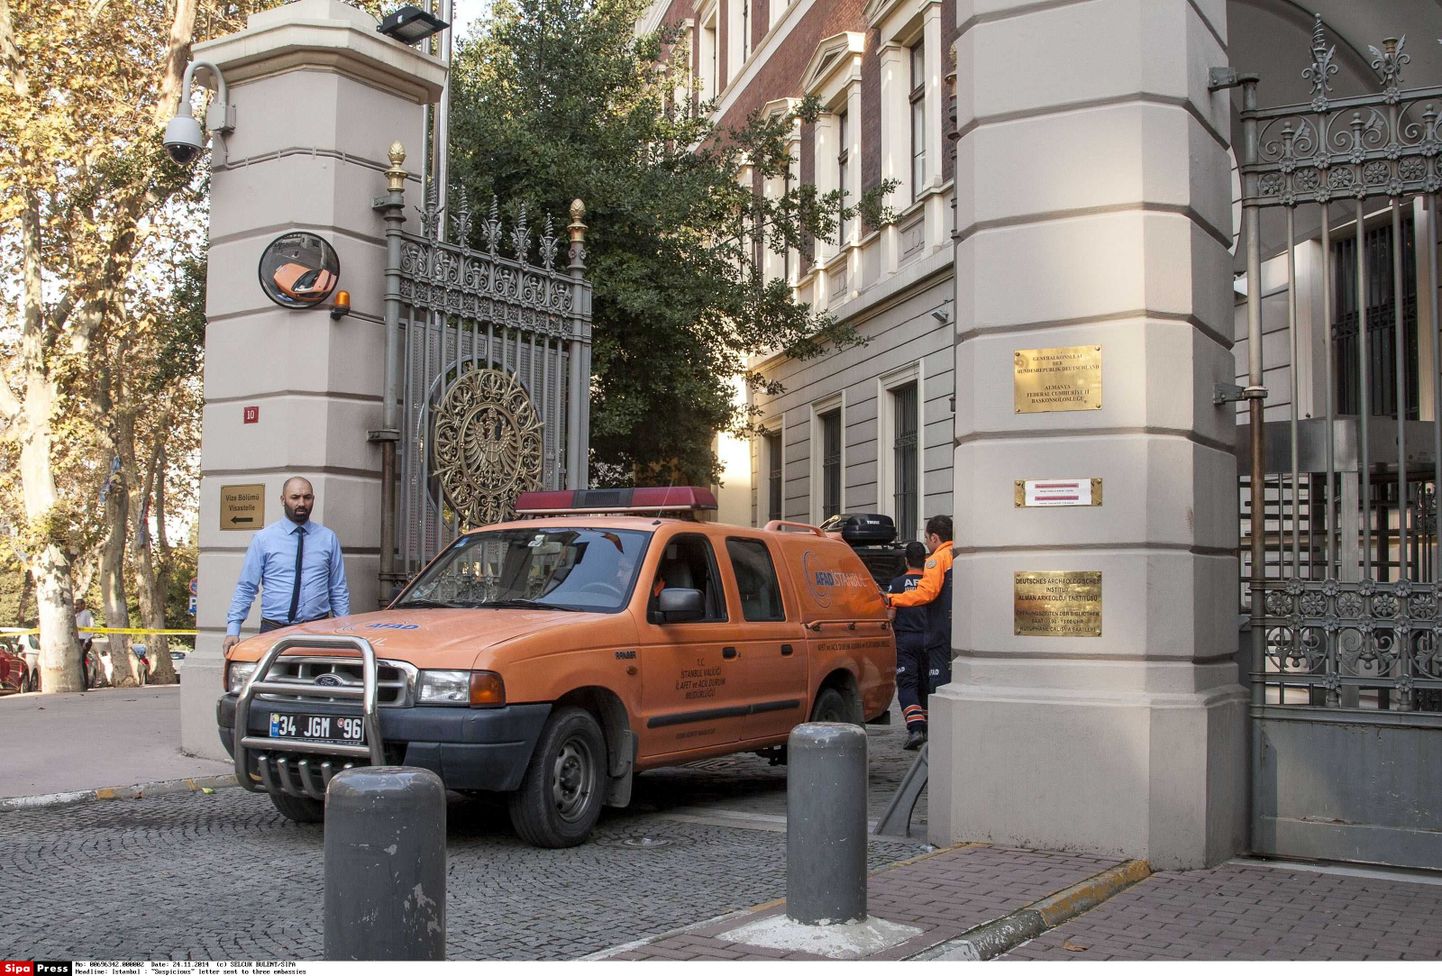 Türgi õnnetuste ja hädaolukordade ameti (AFAD) auto sõidab välja Istanbulis asuva Saksa konsulaadi territooriumilt. Foto on tehtud 24. oktoobril.